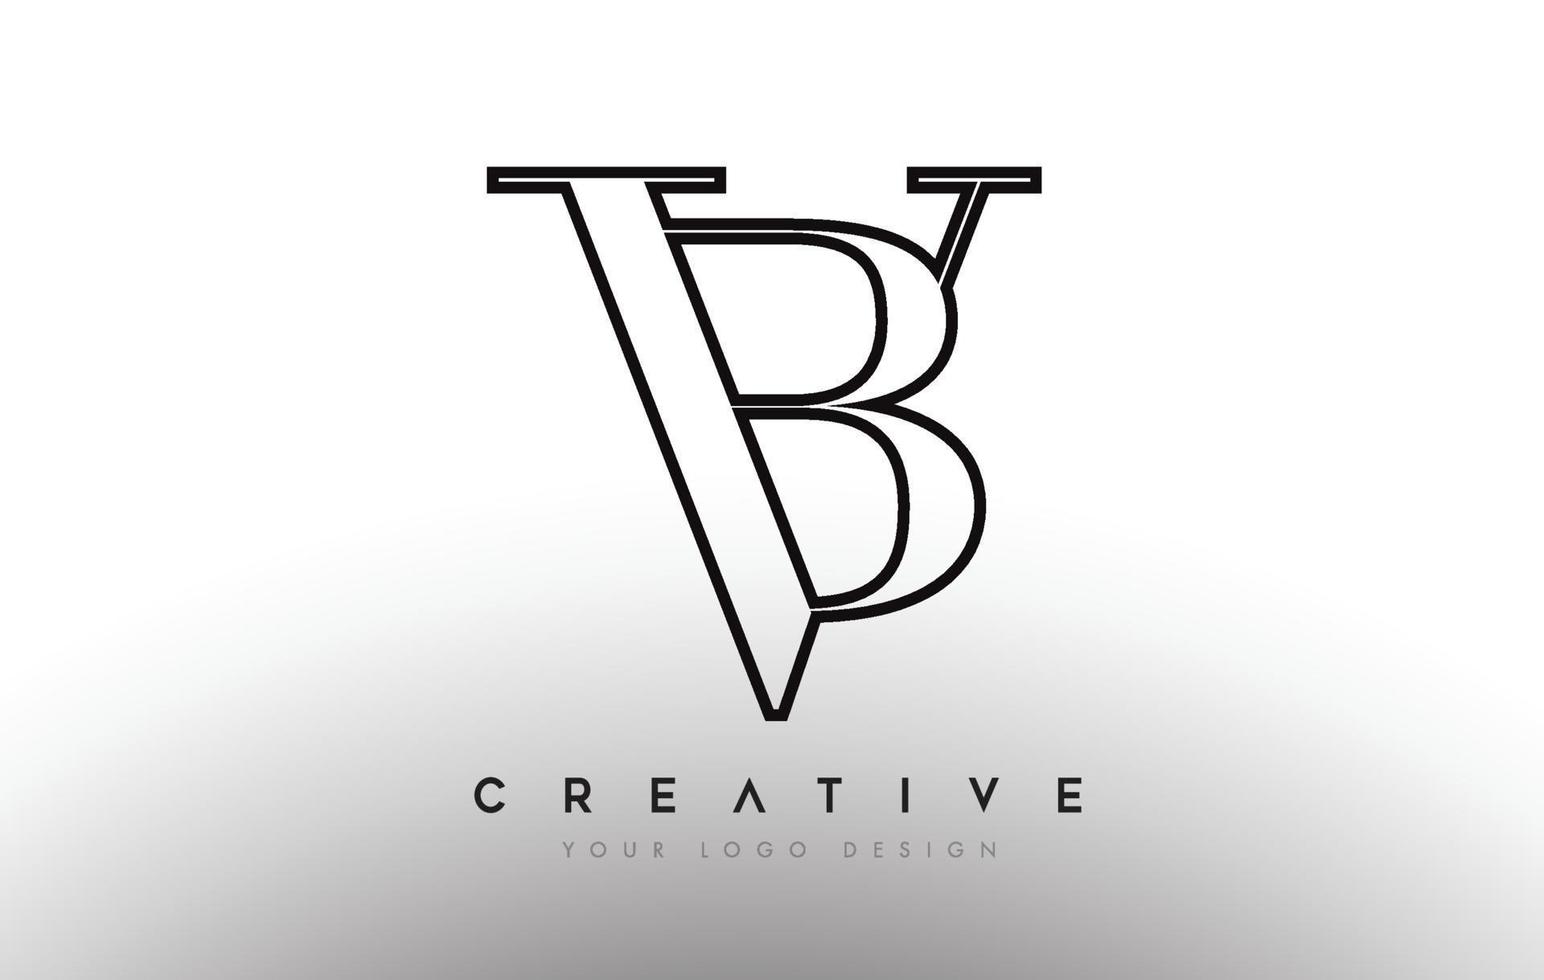 bn bn brief design logo logotype icon Konzept mit Serifenschrift und klassischem elegantem Look Vektor